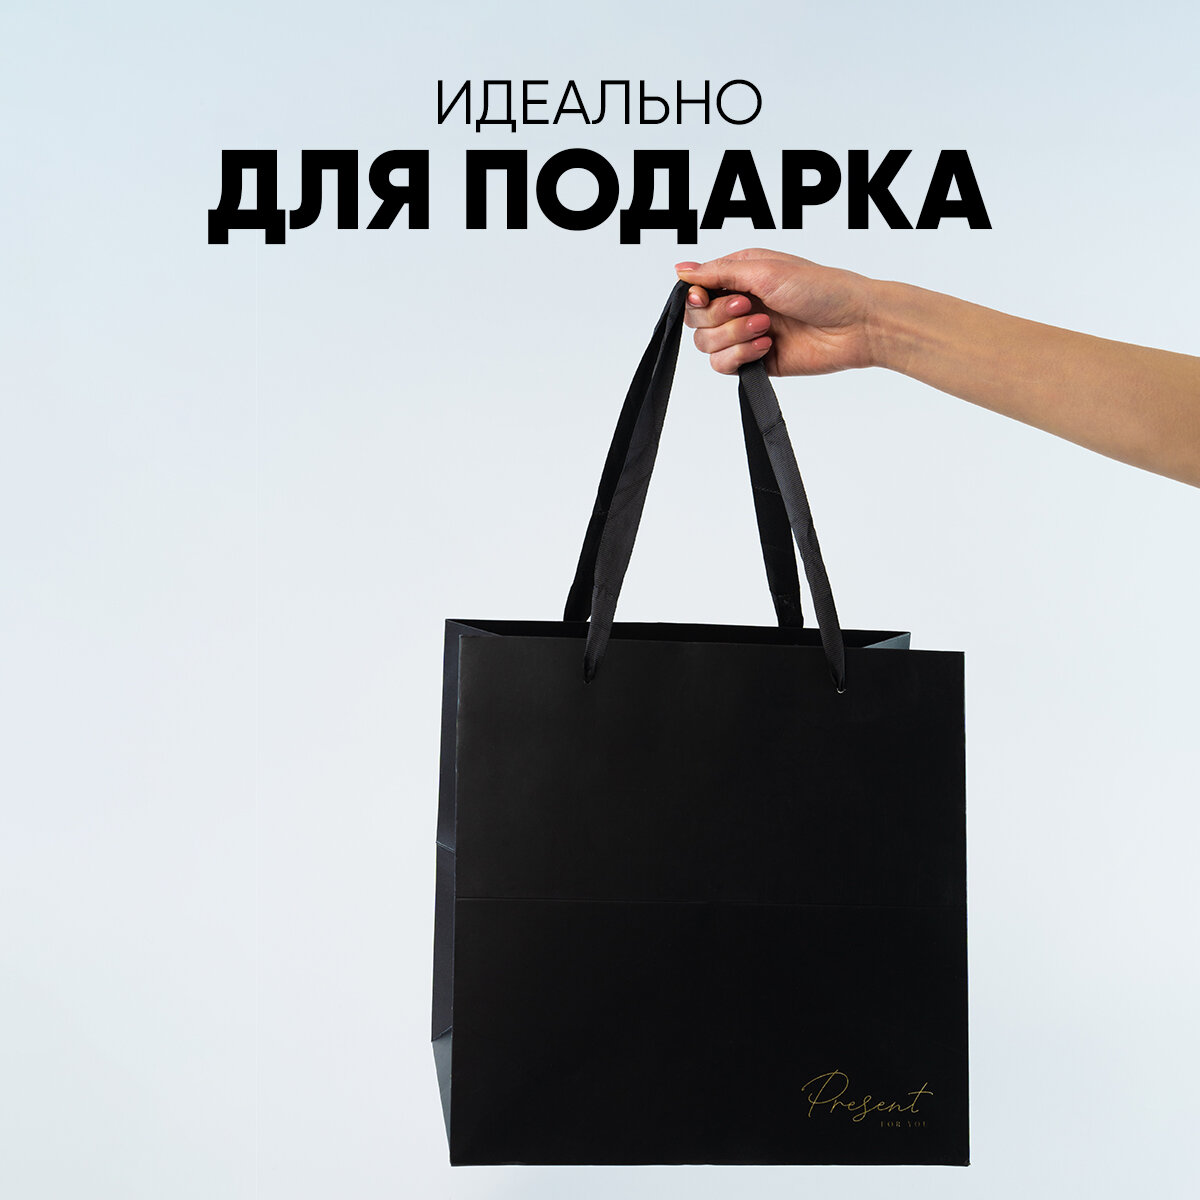 Пакет подарочный квадратный «Present» черный, 30 × 30 × 30 см